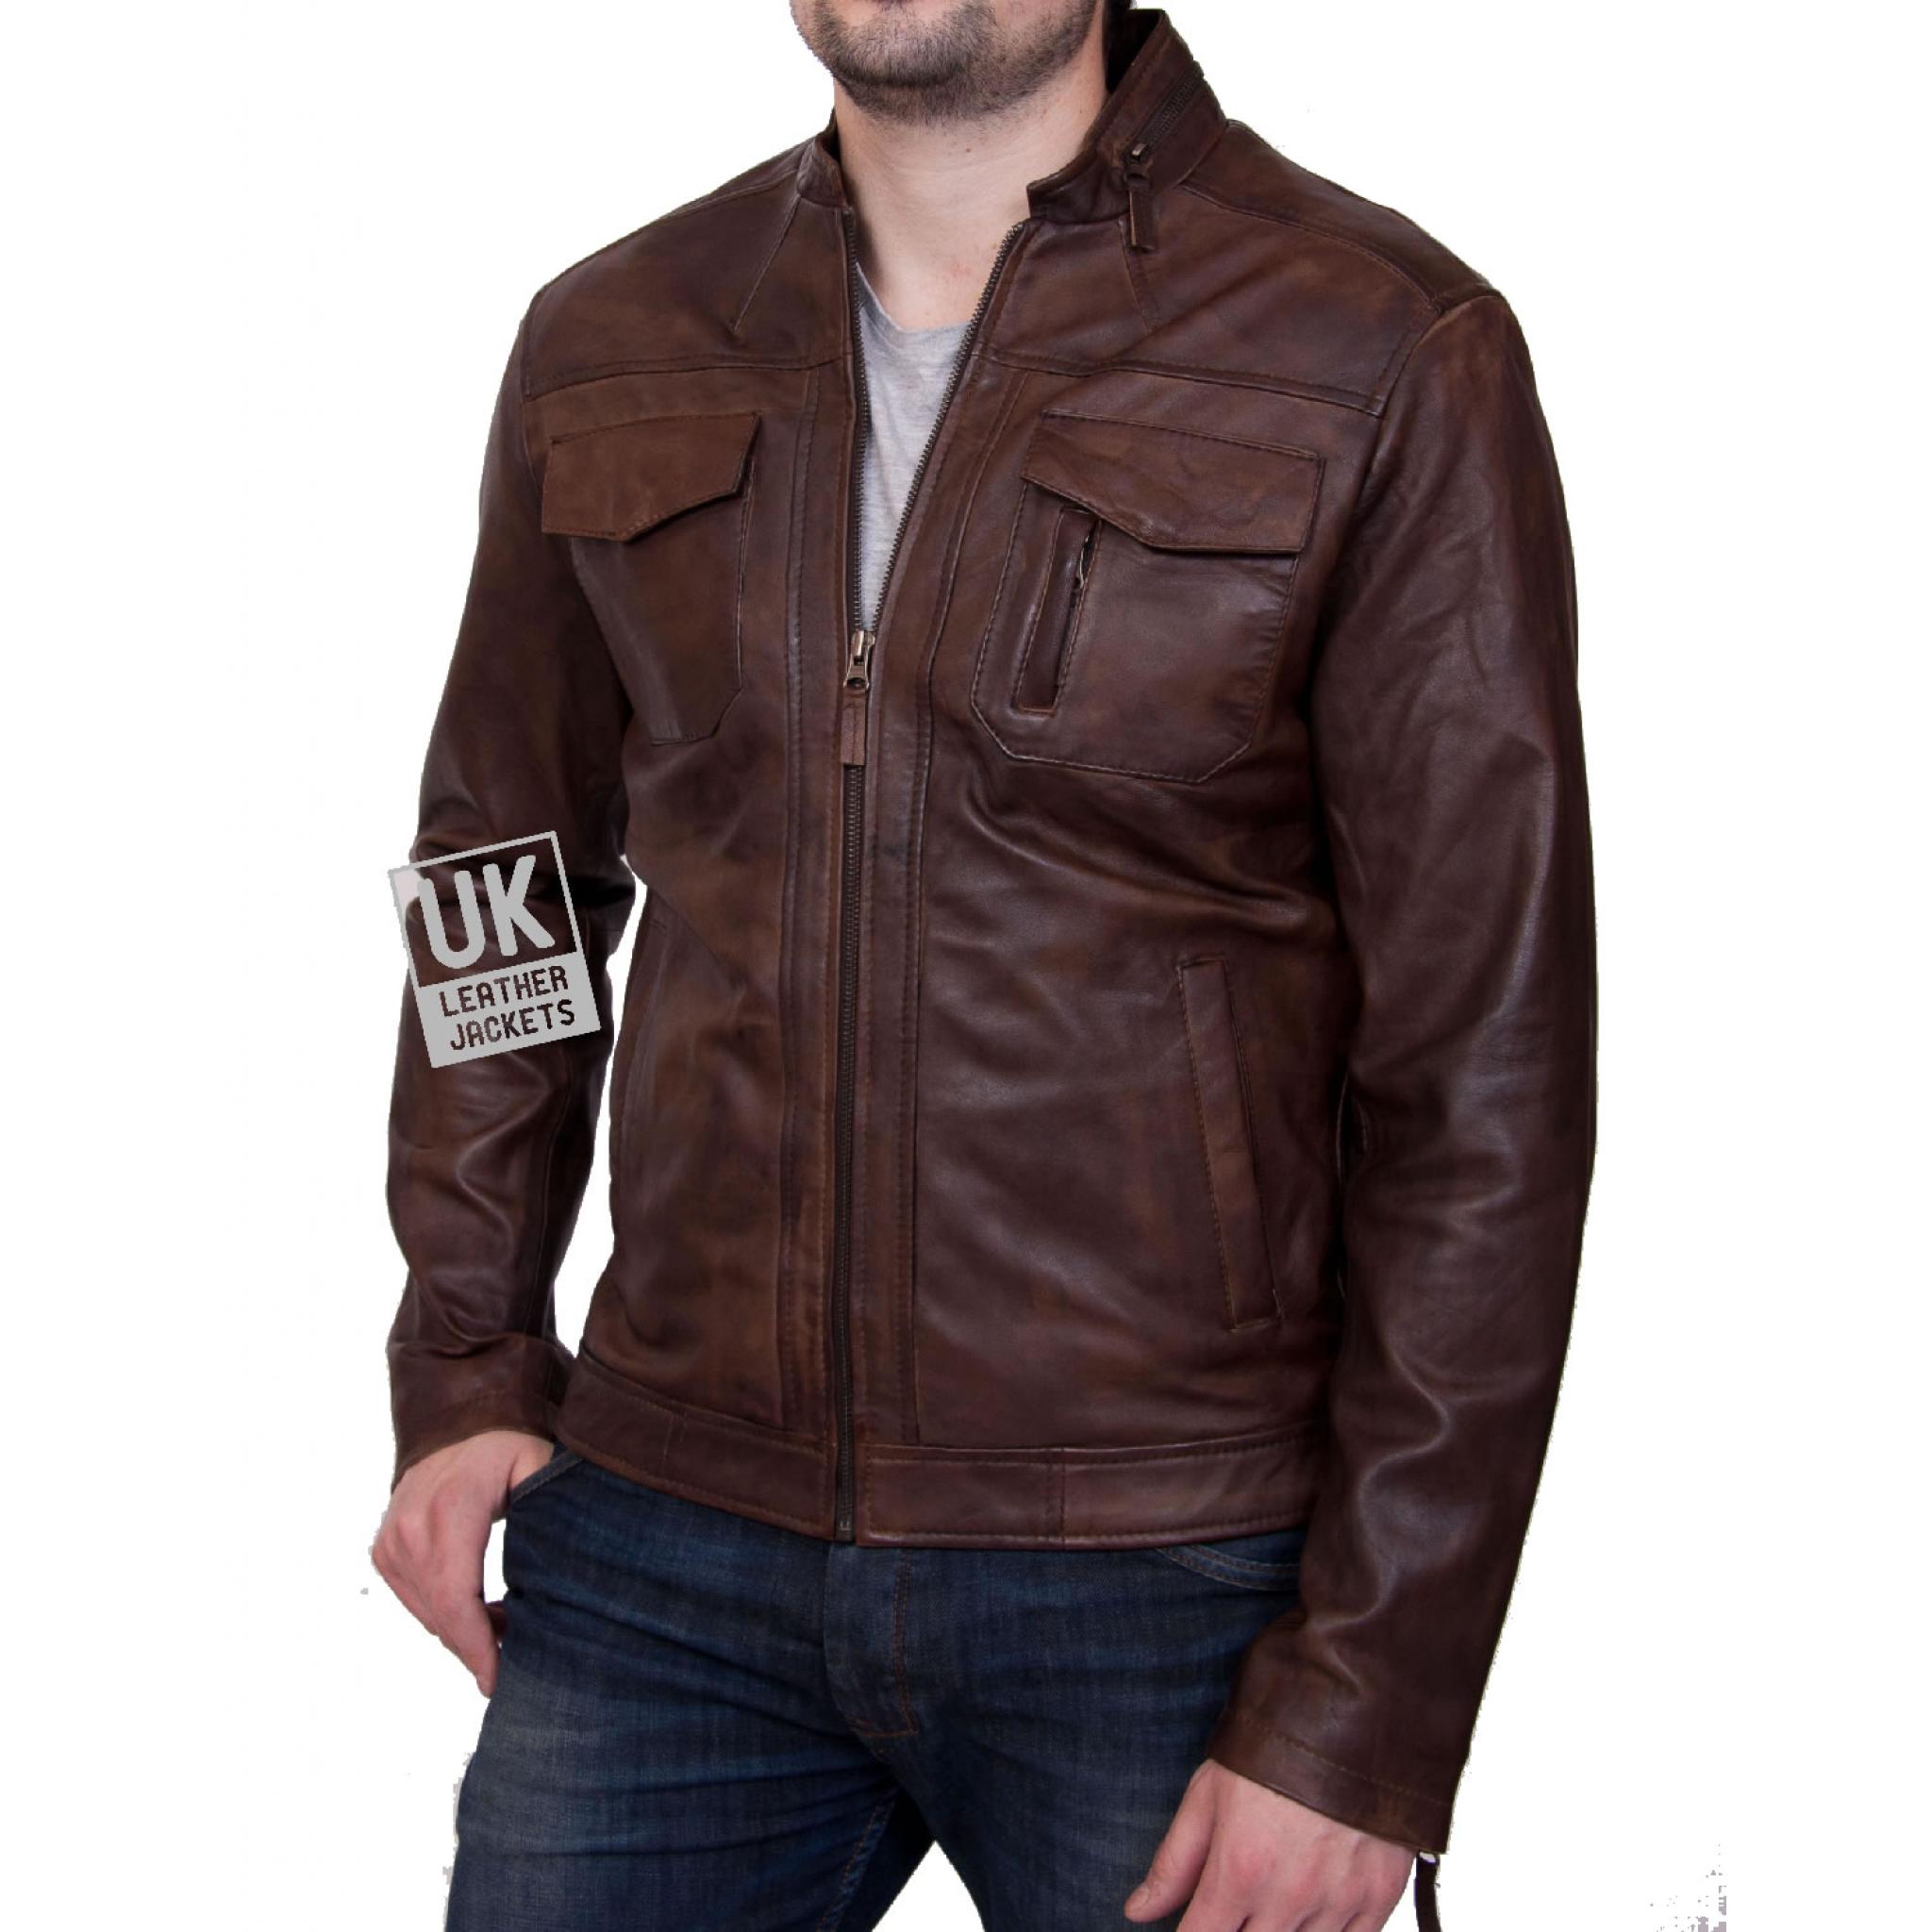 Mens Vintage Brown Leather Jacket - Beck | UK Leather Jackets